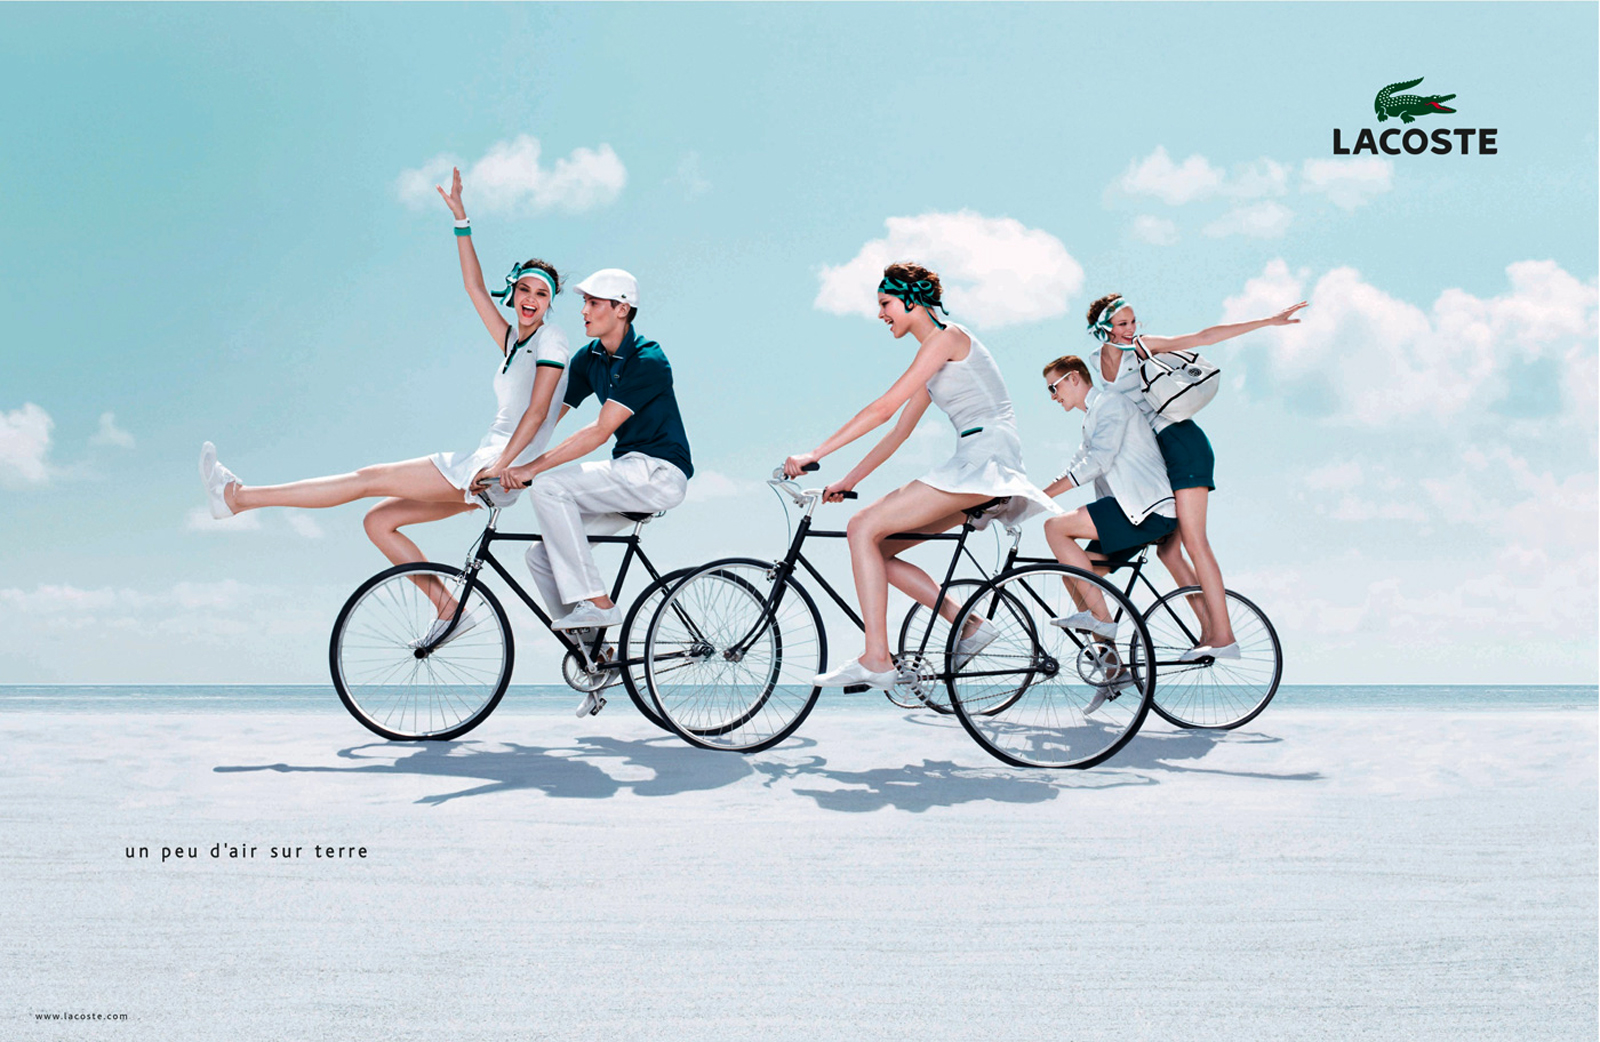 Advertising campaign is. Lacoste campaign. Креативный велосипед. Креативная реклама велосипедов. Реклама велосипедов.